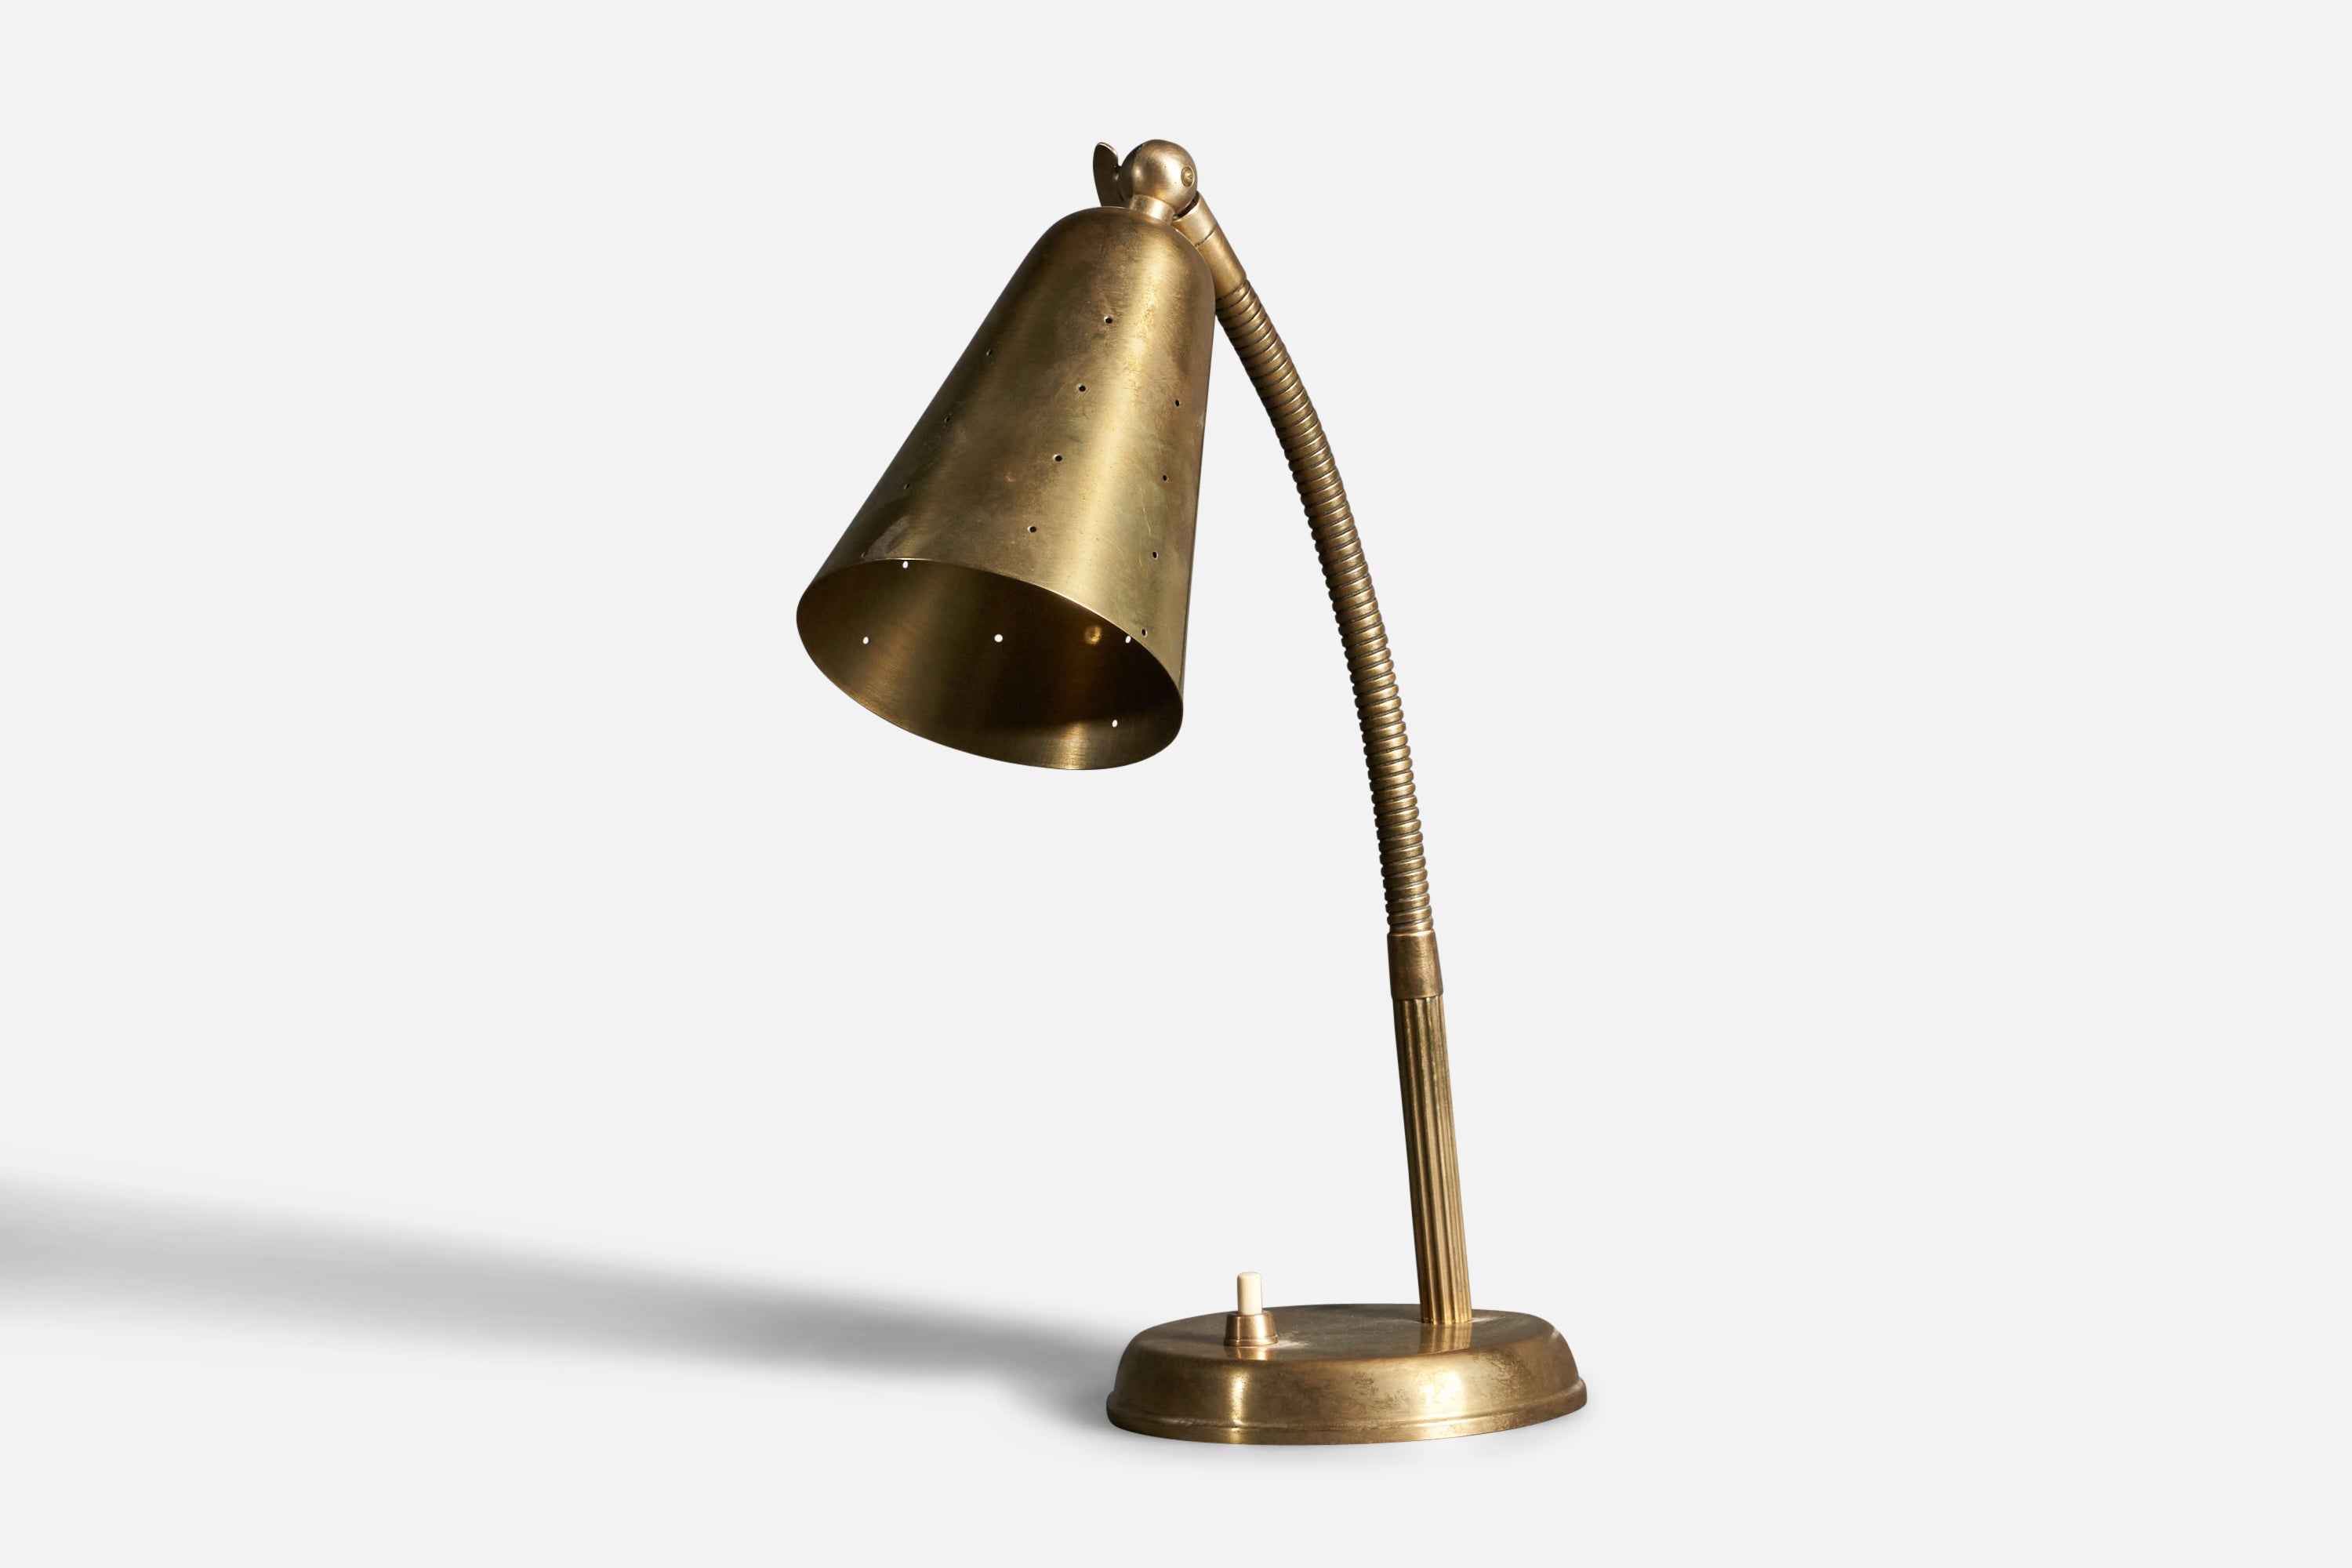 Danish Designer, Adjustable Modernist Table Lamp, Brass, Denmark, 1940s For Sale